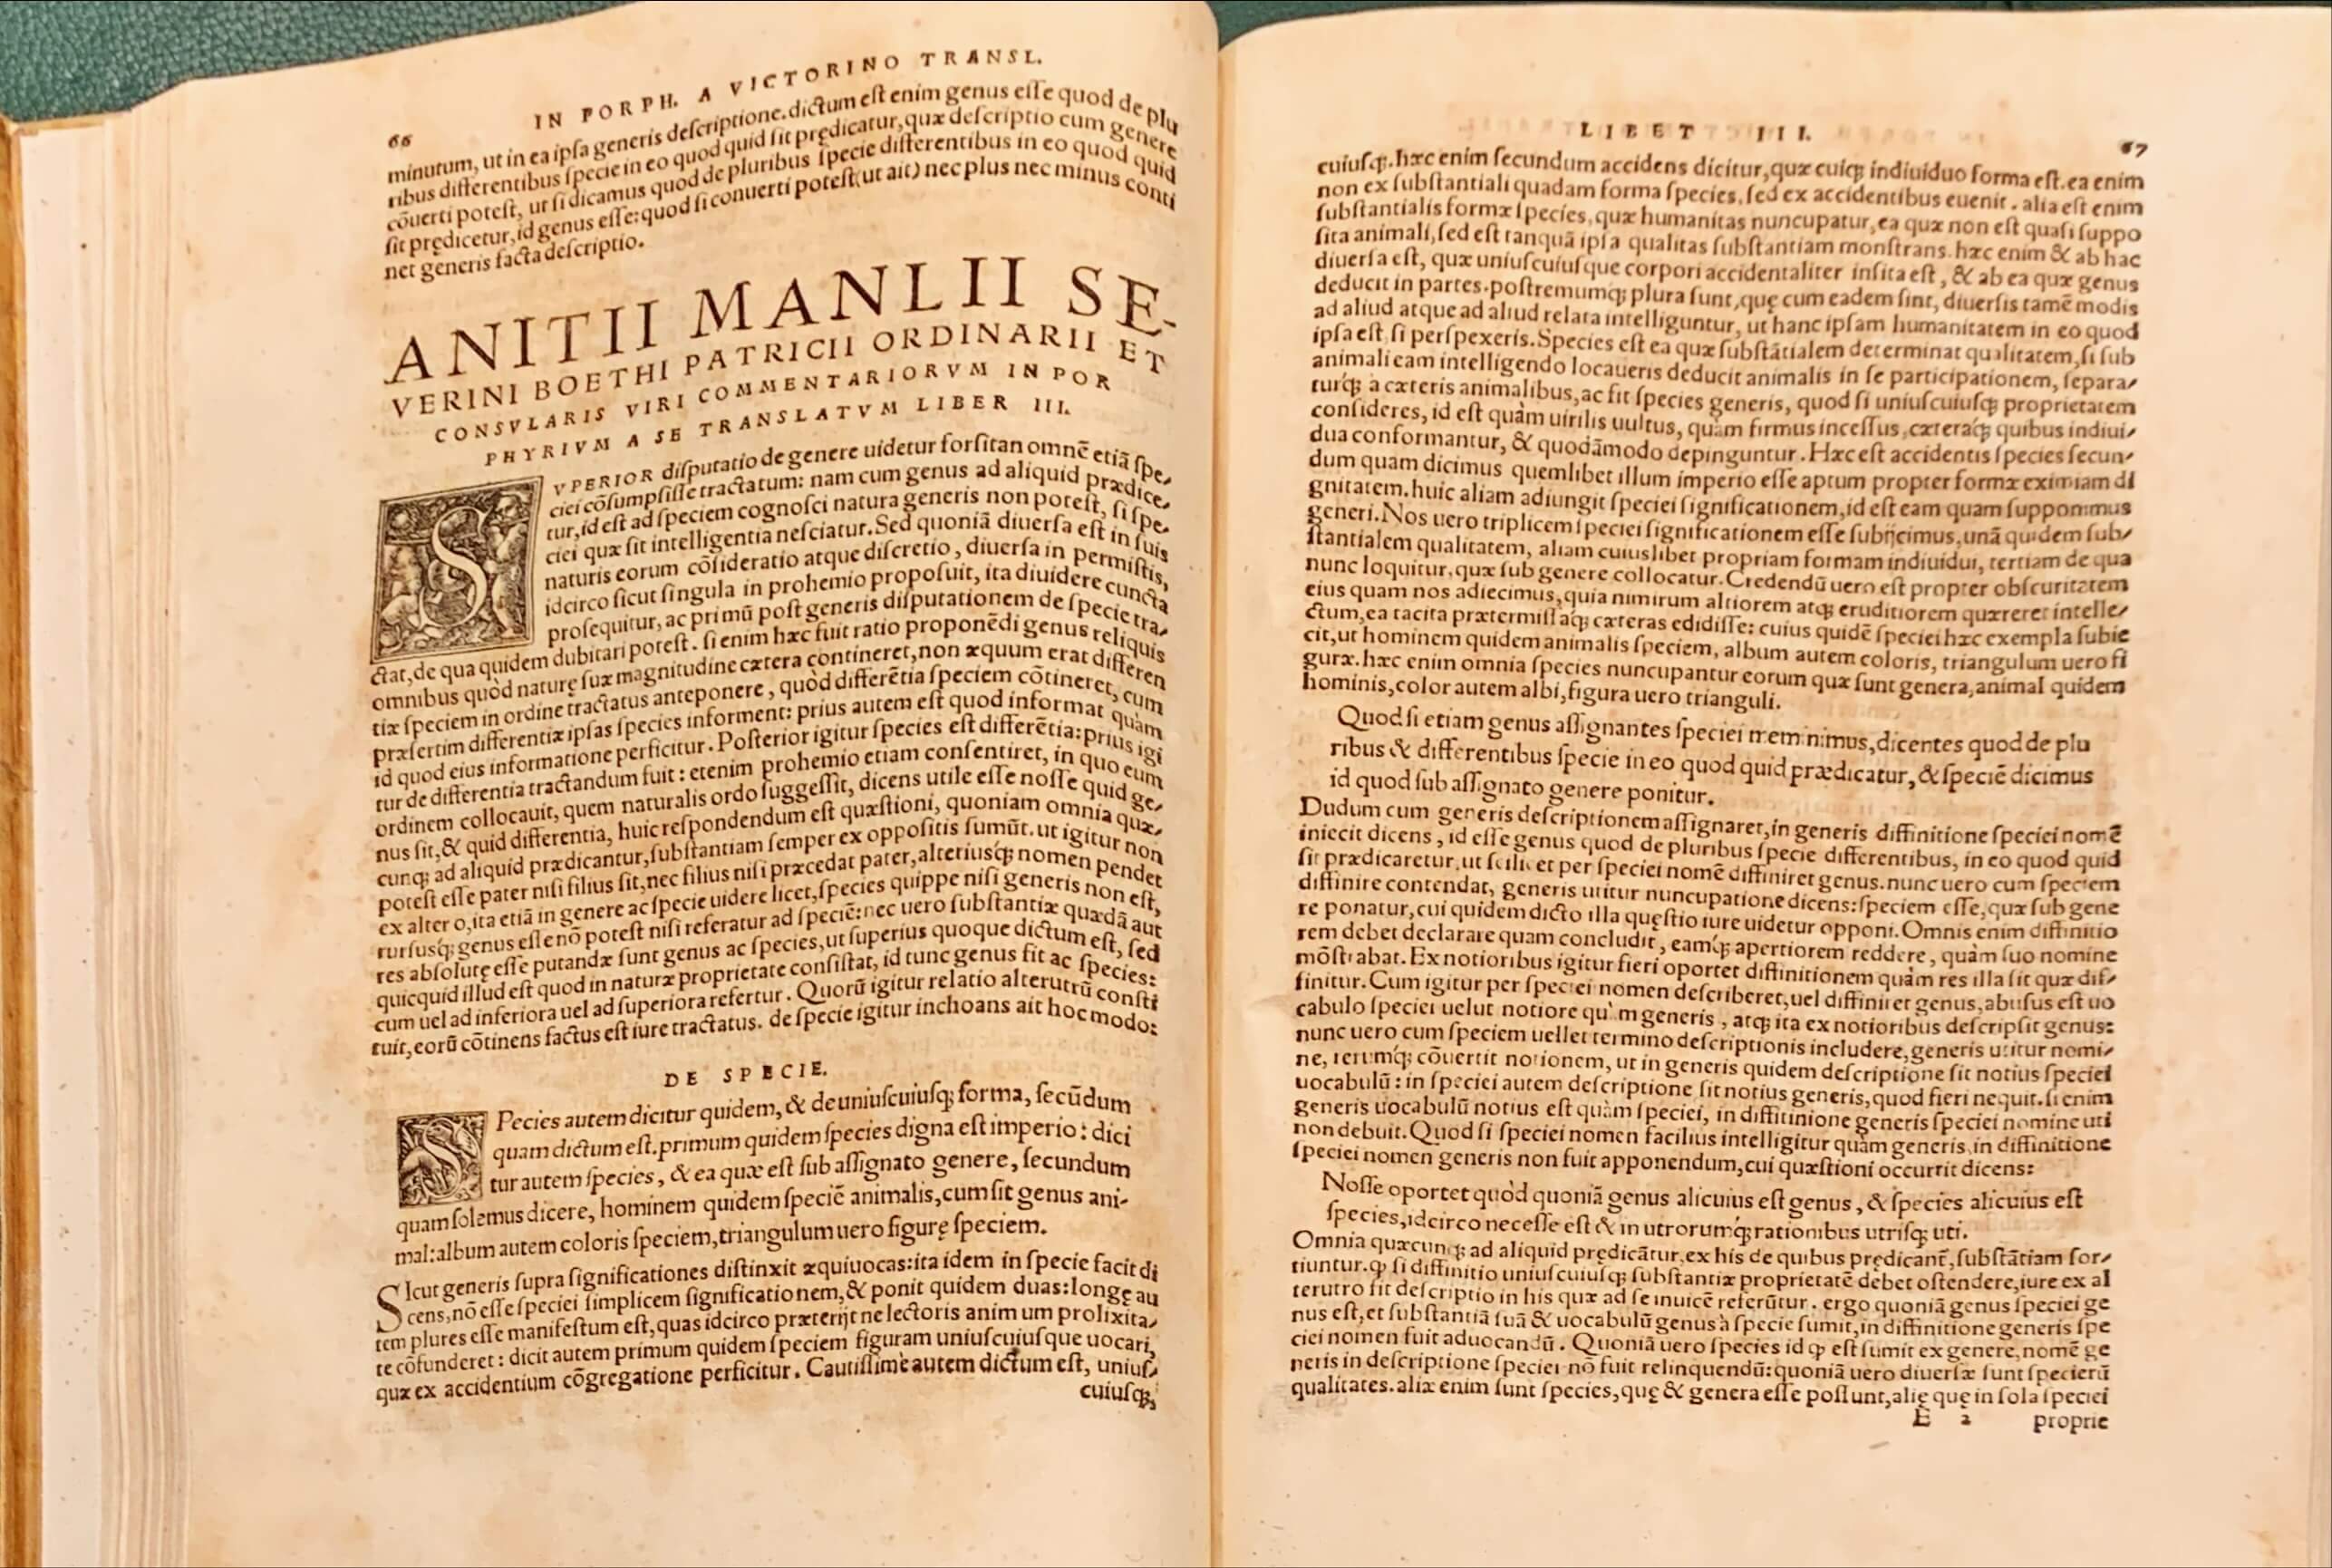 Anitii Manlii Severini Boethi in omnibus philosophiae partibus inter latinos et graecos autores principis opera, quae extant, omnia, 2 Bände